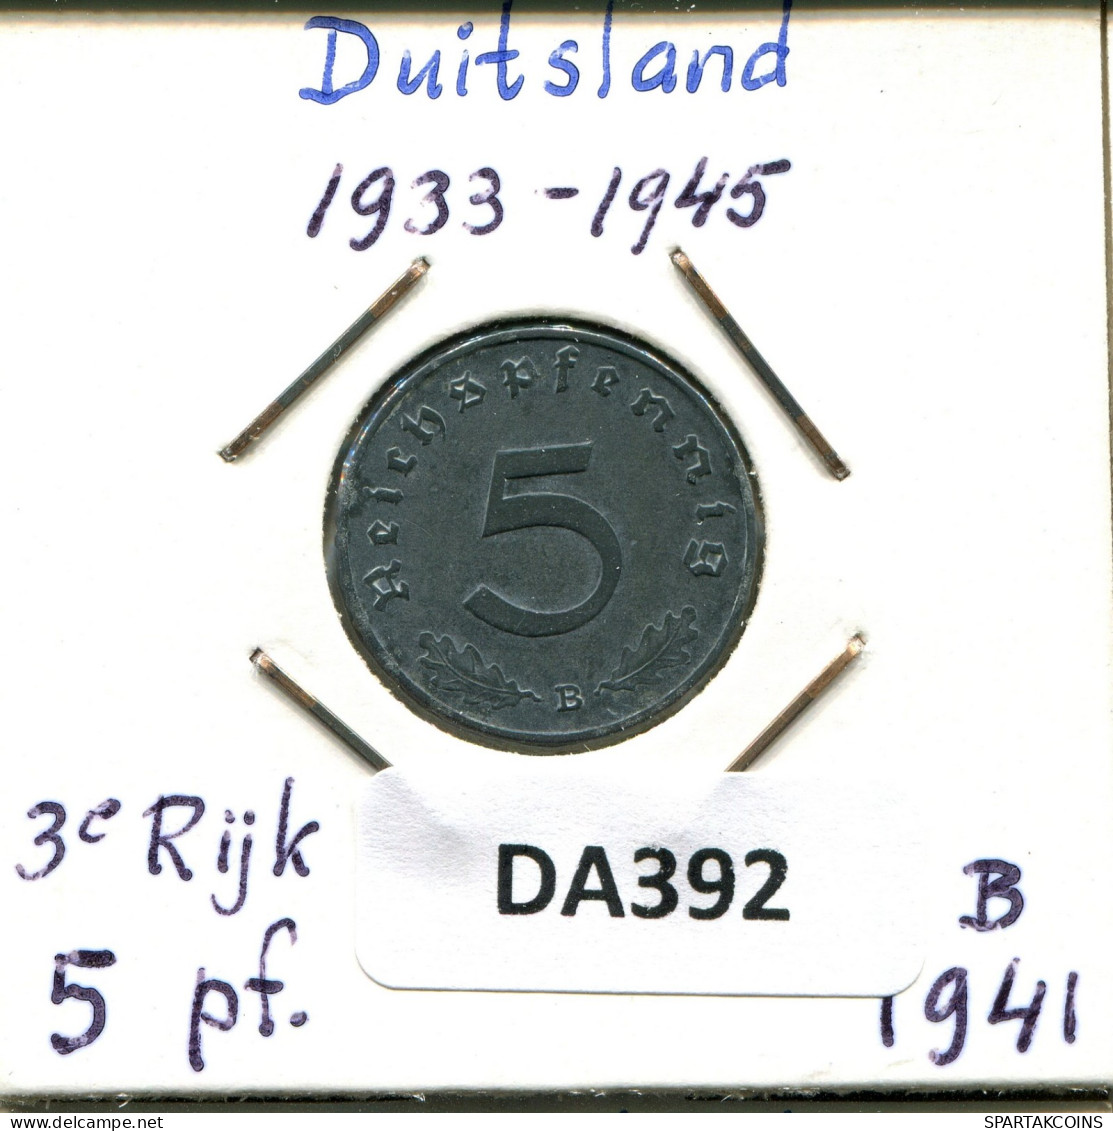 5 REICHSPFENNIG 1941 B ALEMANIA Moneda GERMANY #DA392.2.E.A - 5 Reichspfennig